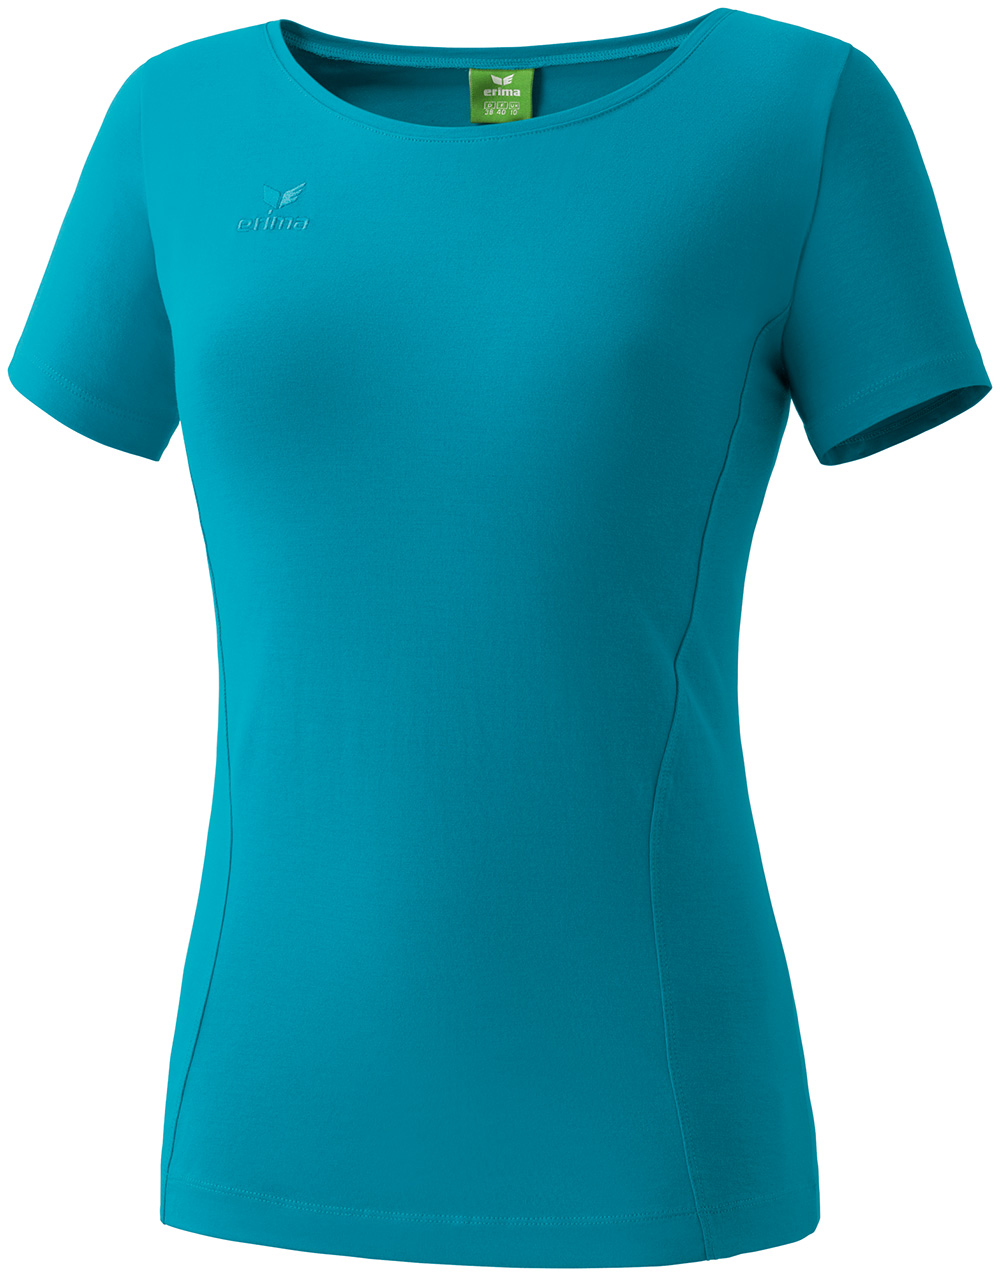 allgaeusport.de - Erima Style T-Shirt Damen